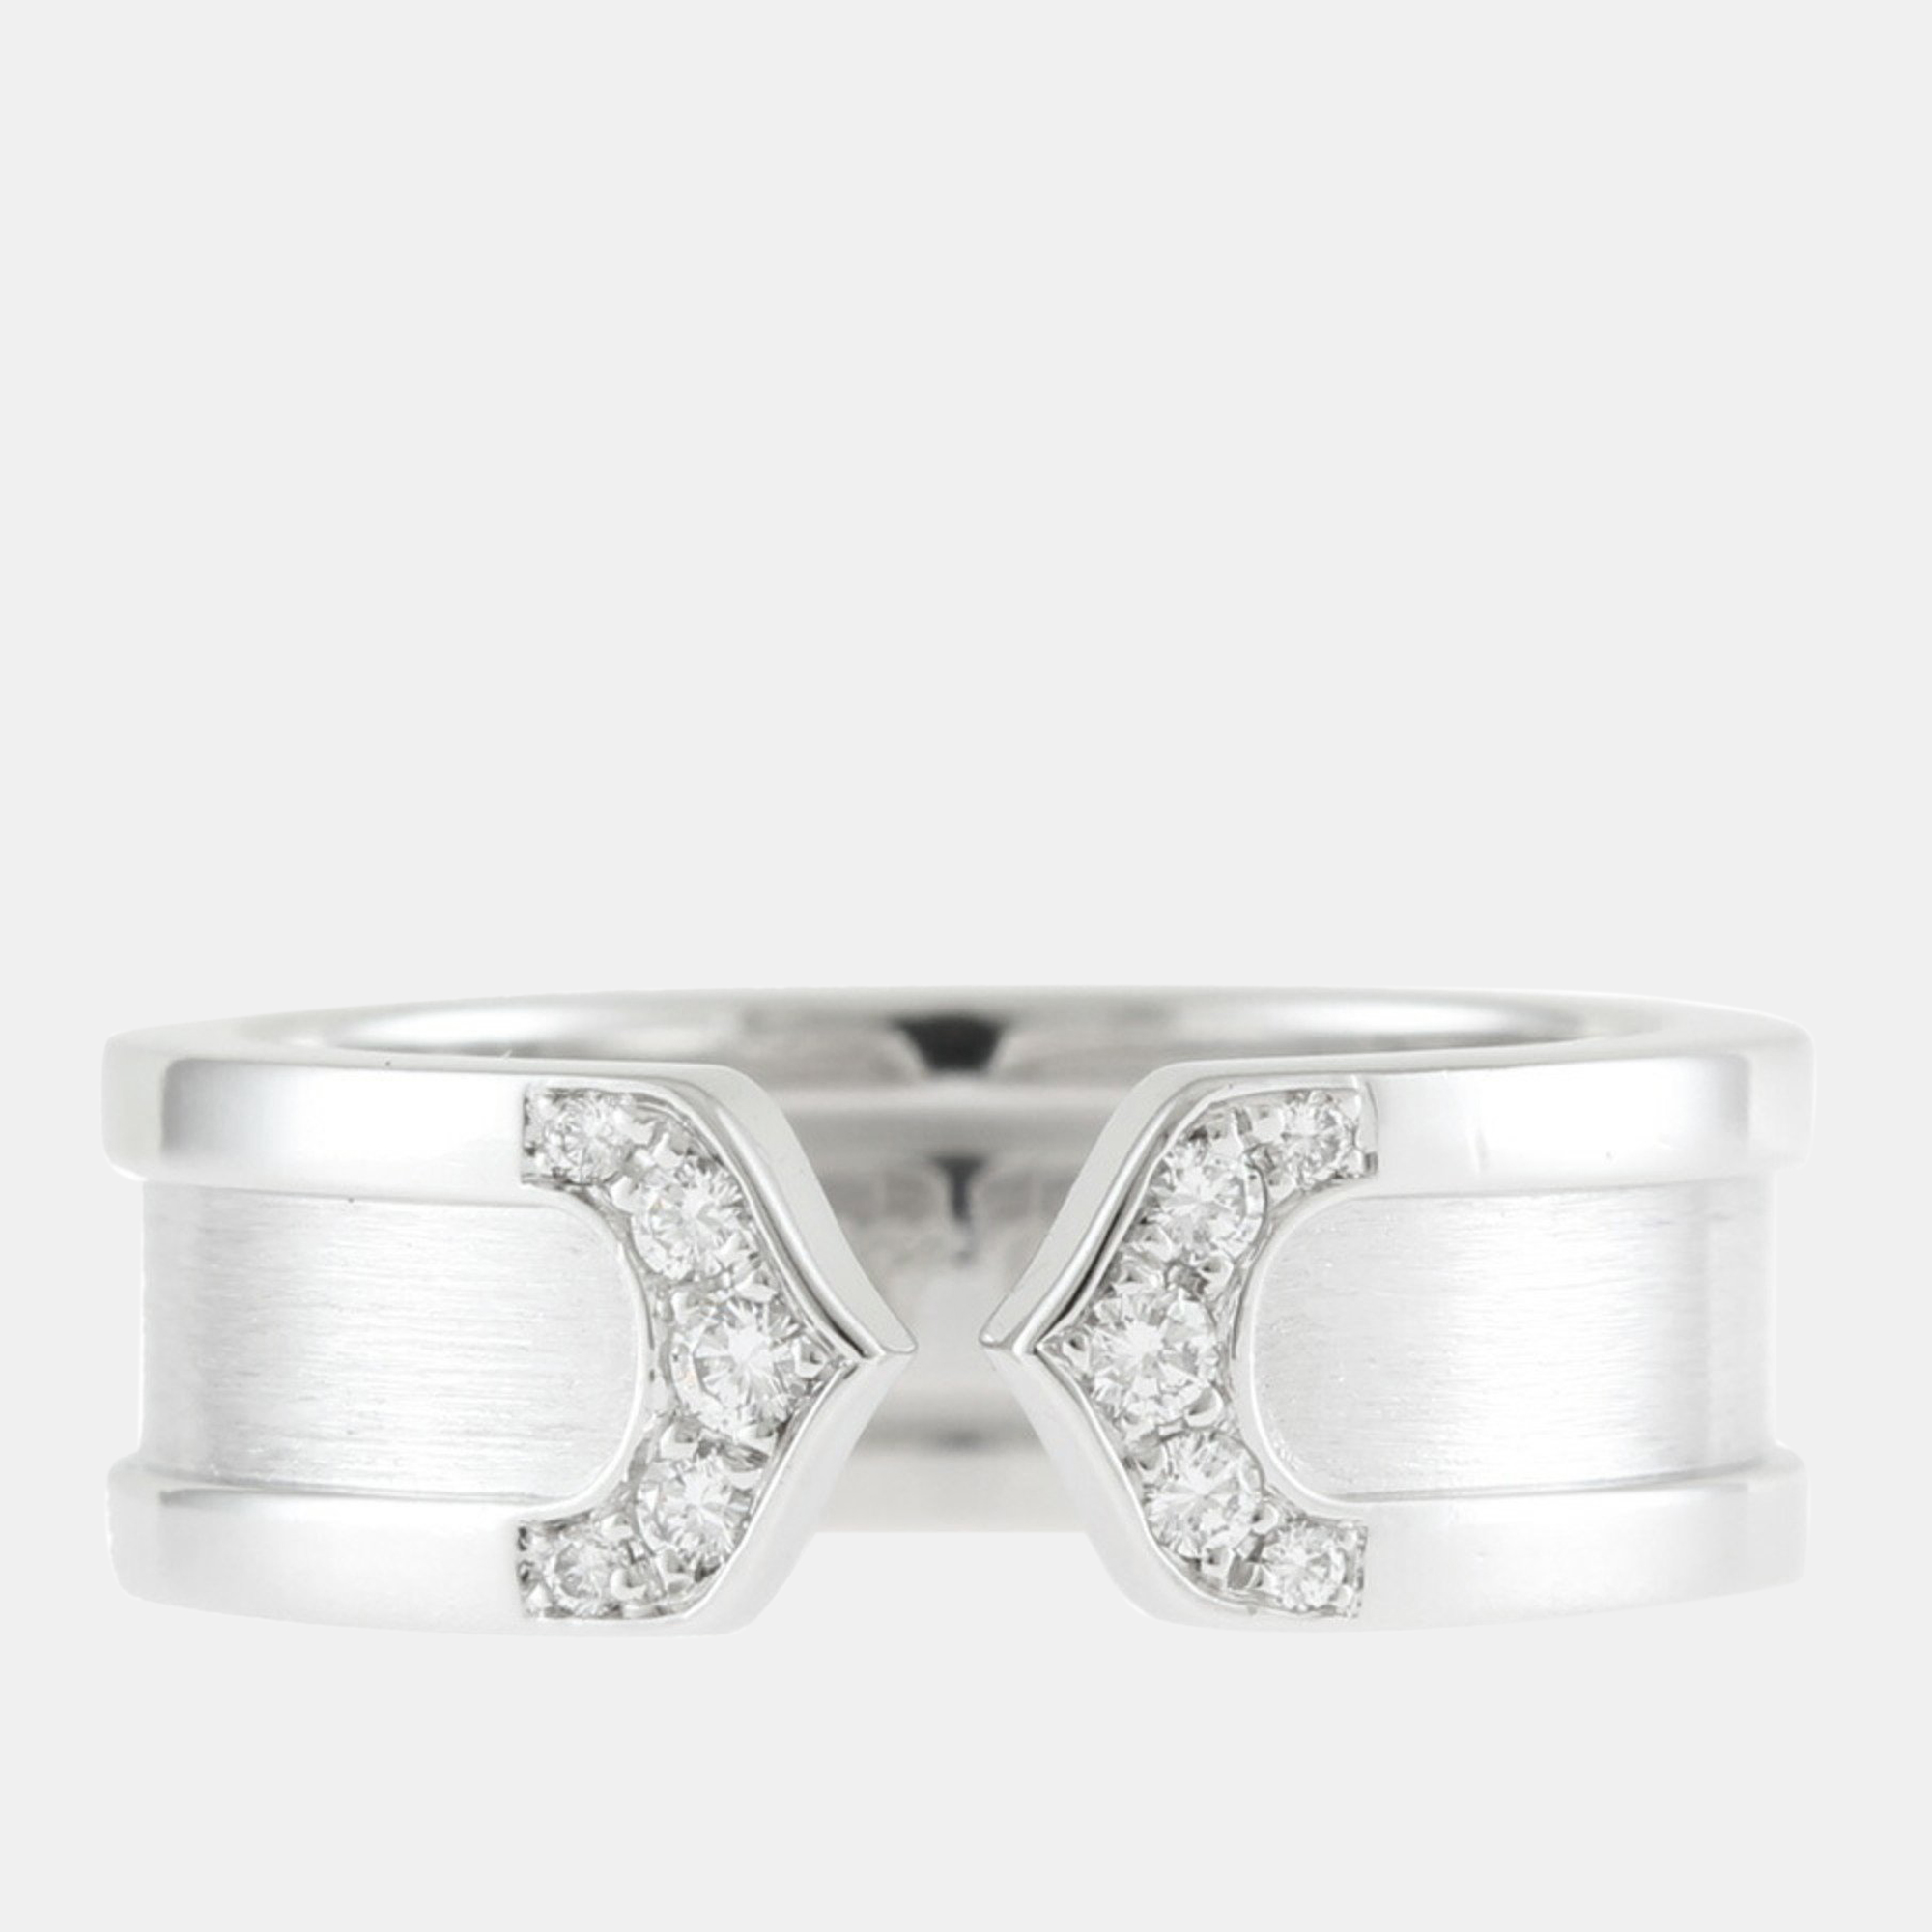 Cartier 18K White Gold And Diamond Double C De Cartier Wedding Band Ring EU 62